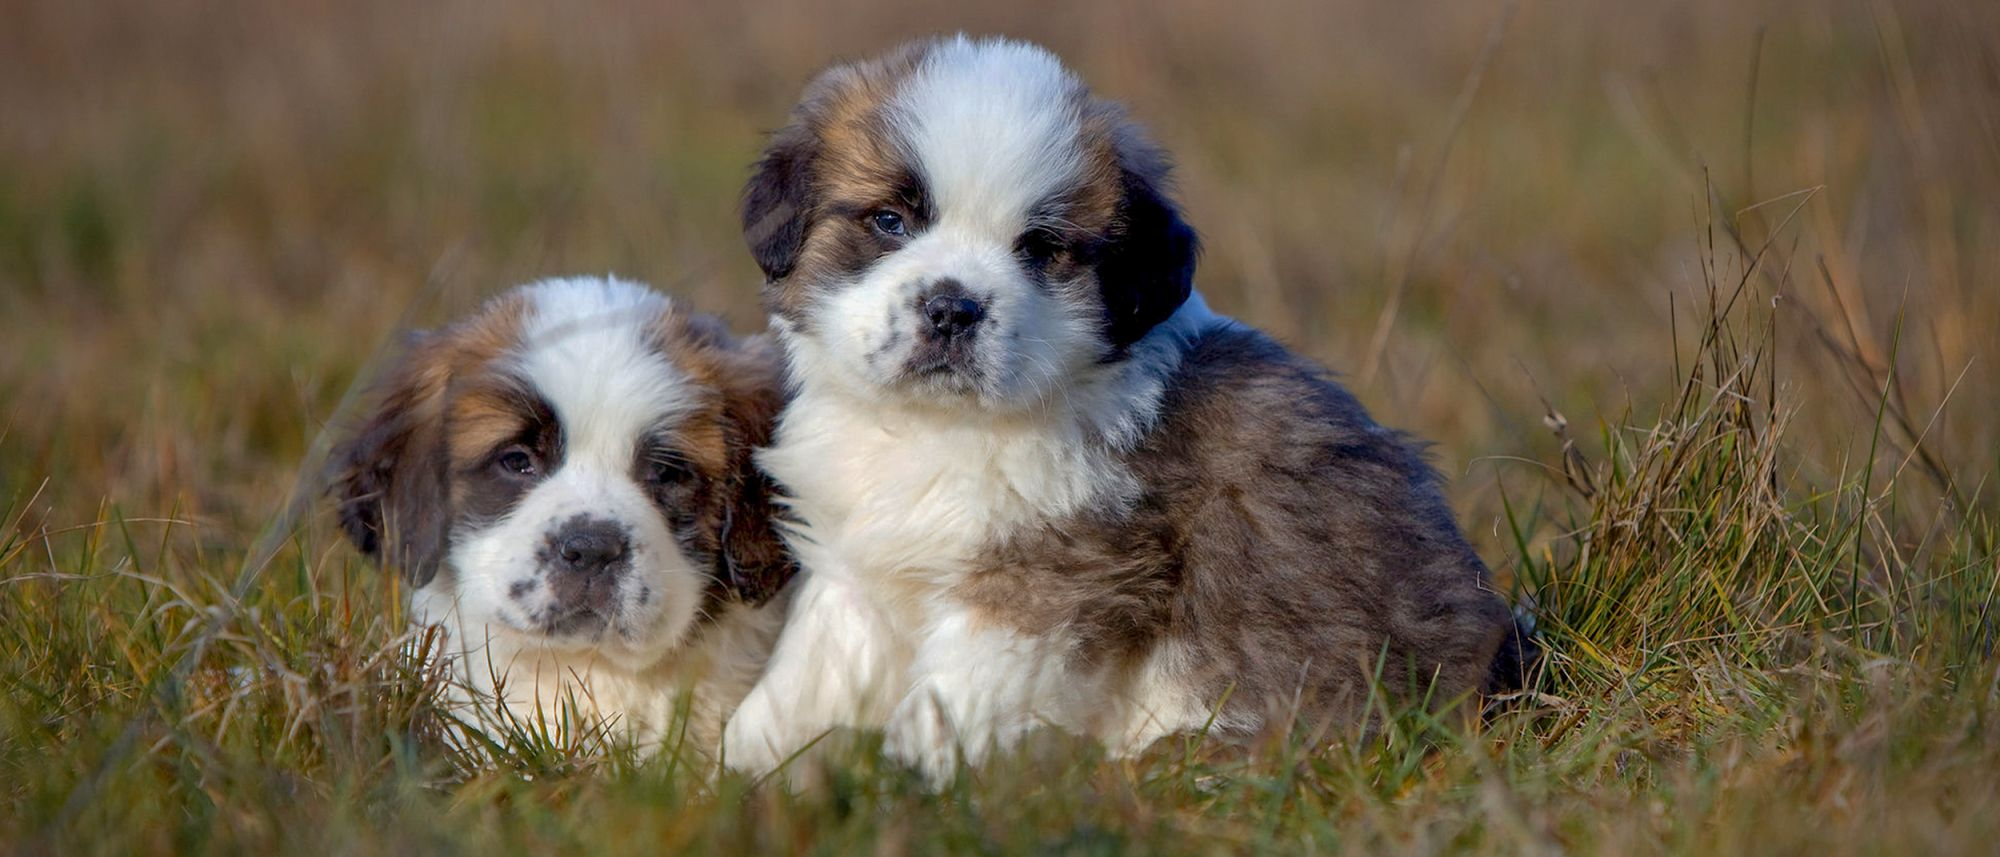 Twee Sint Bernard puppies in het gras